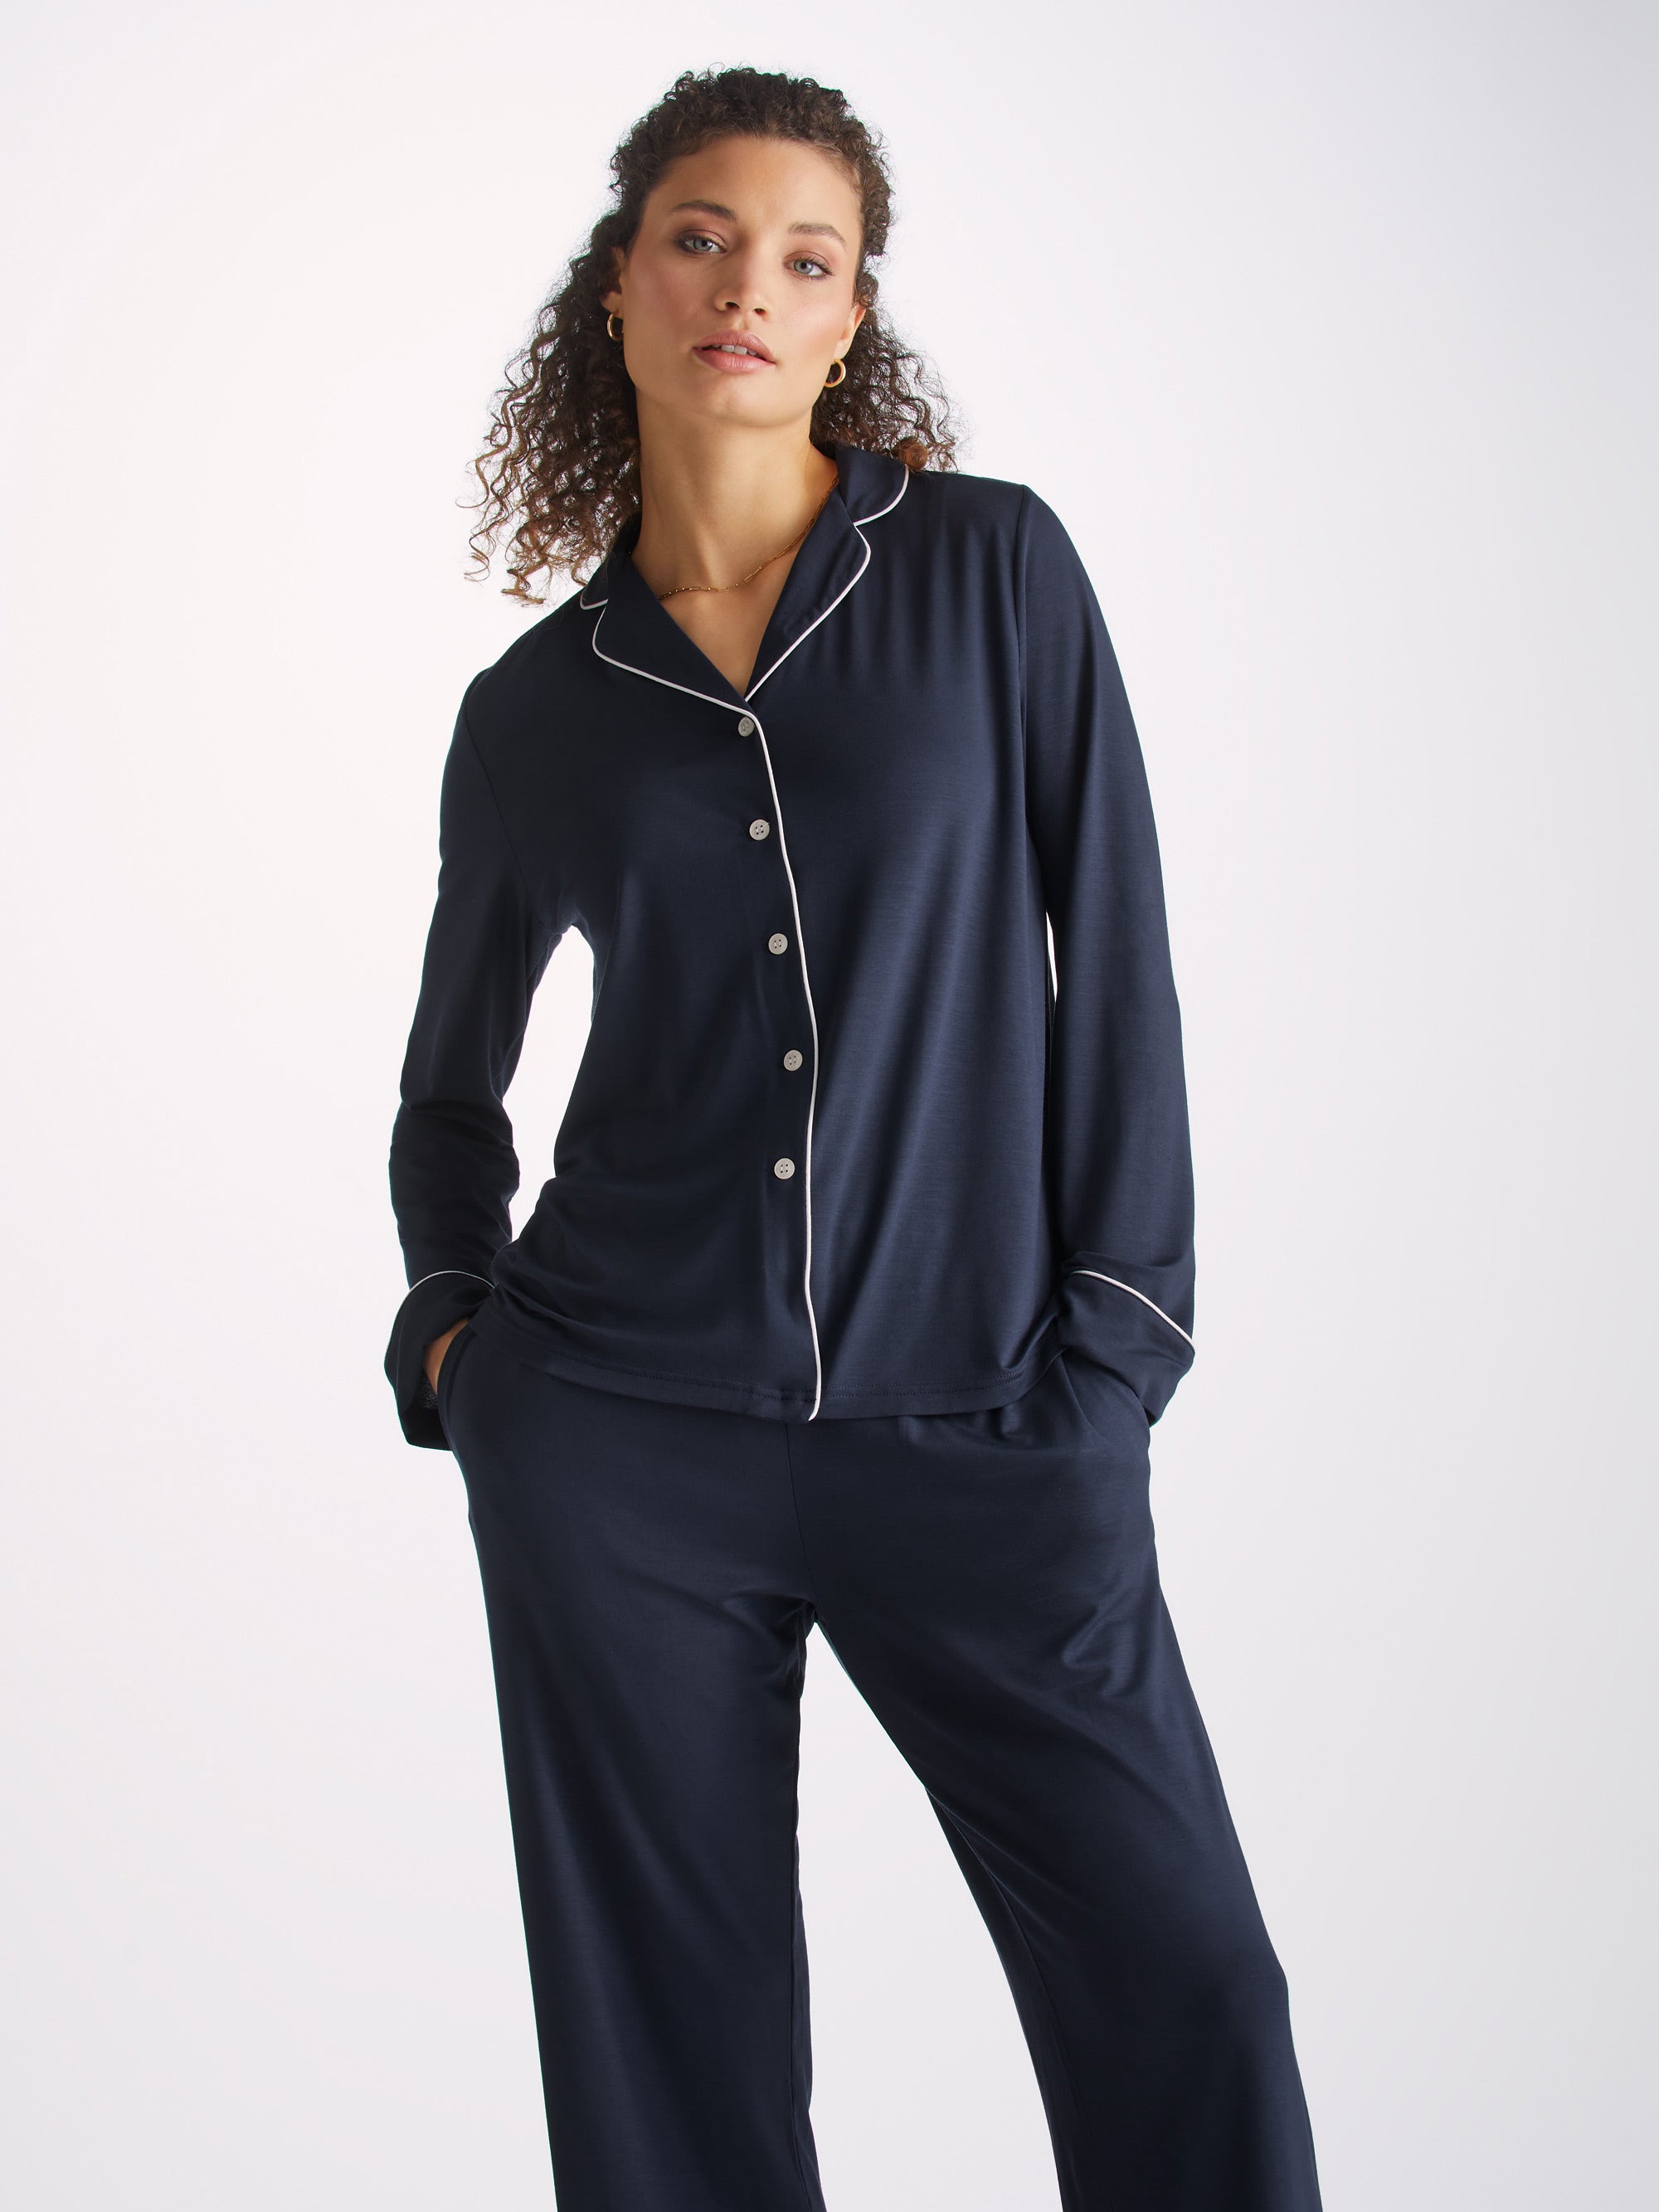 Lara Micro Modal Stretch Navy Women's Pyjamas